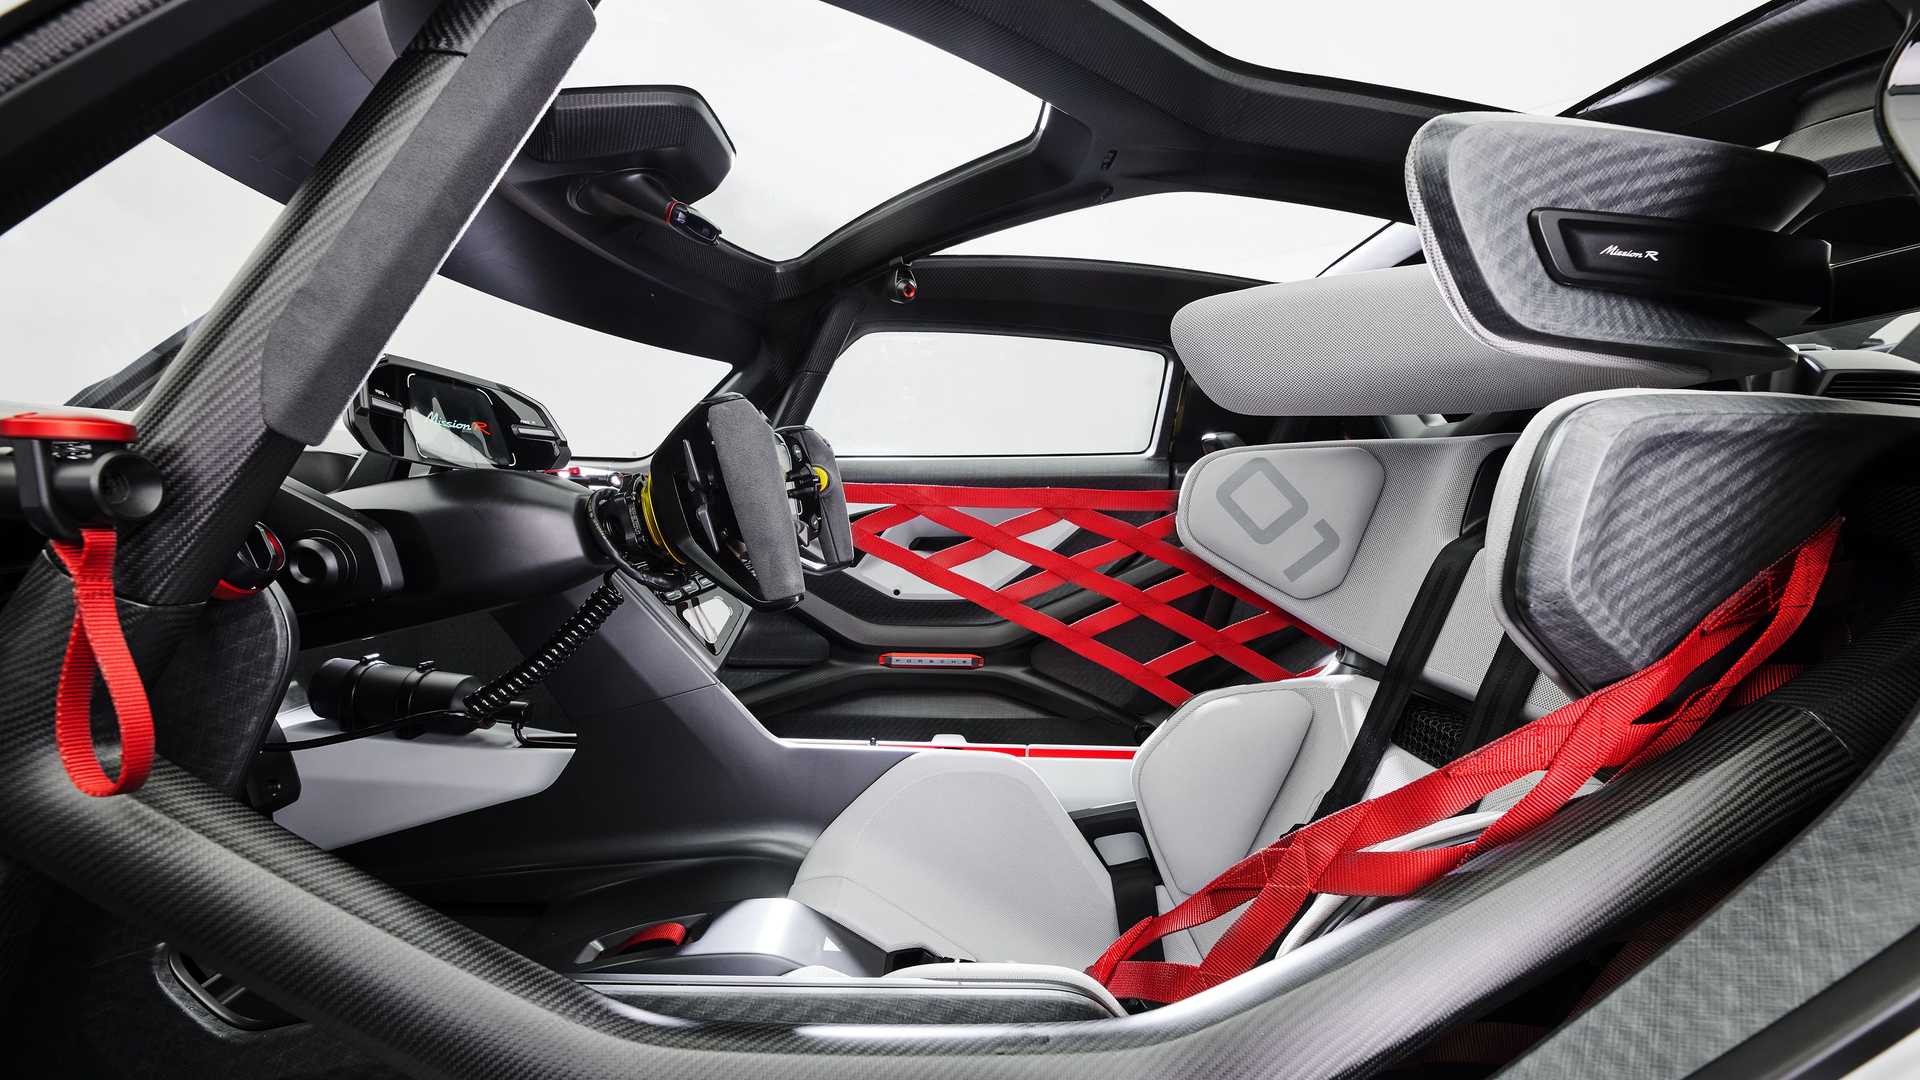 کابین و صندلی خودروی الکتریکی مفهومی پورشه میشن آر / Porsche Mission R Concept EV